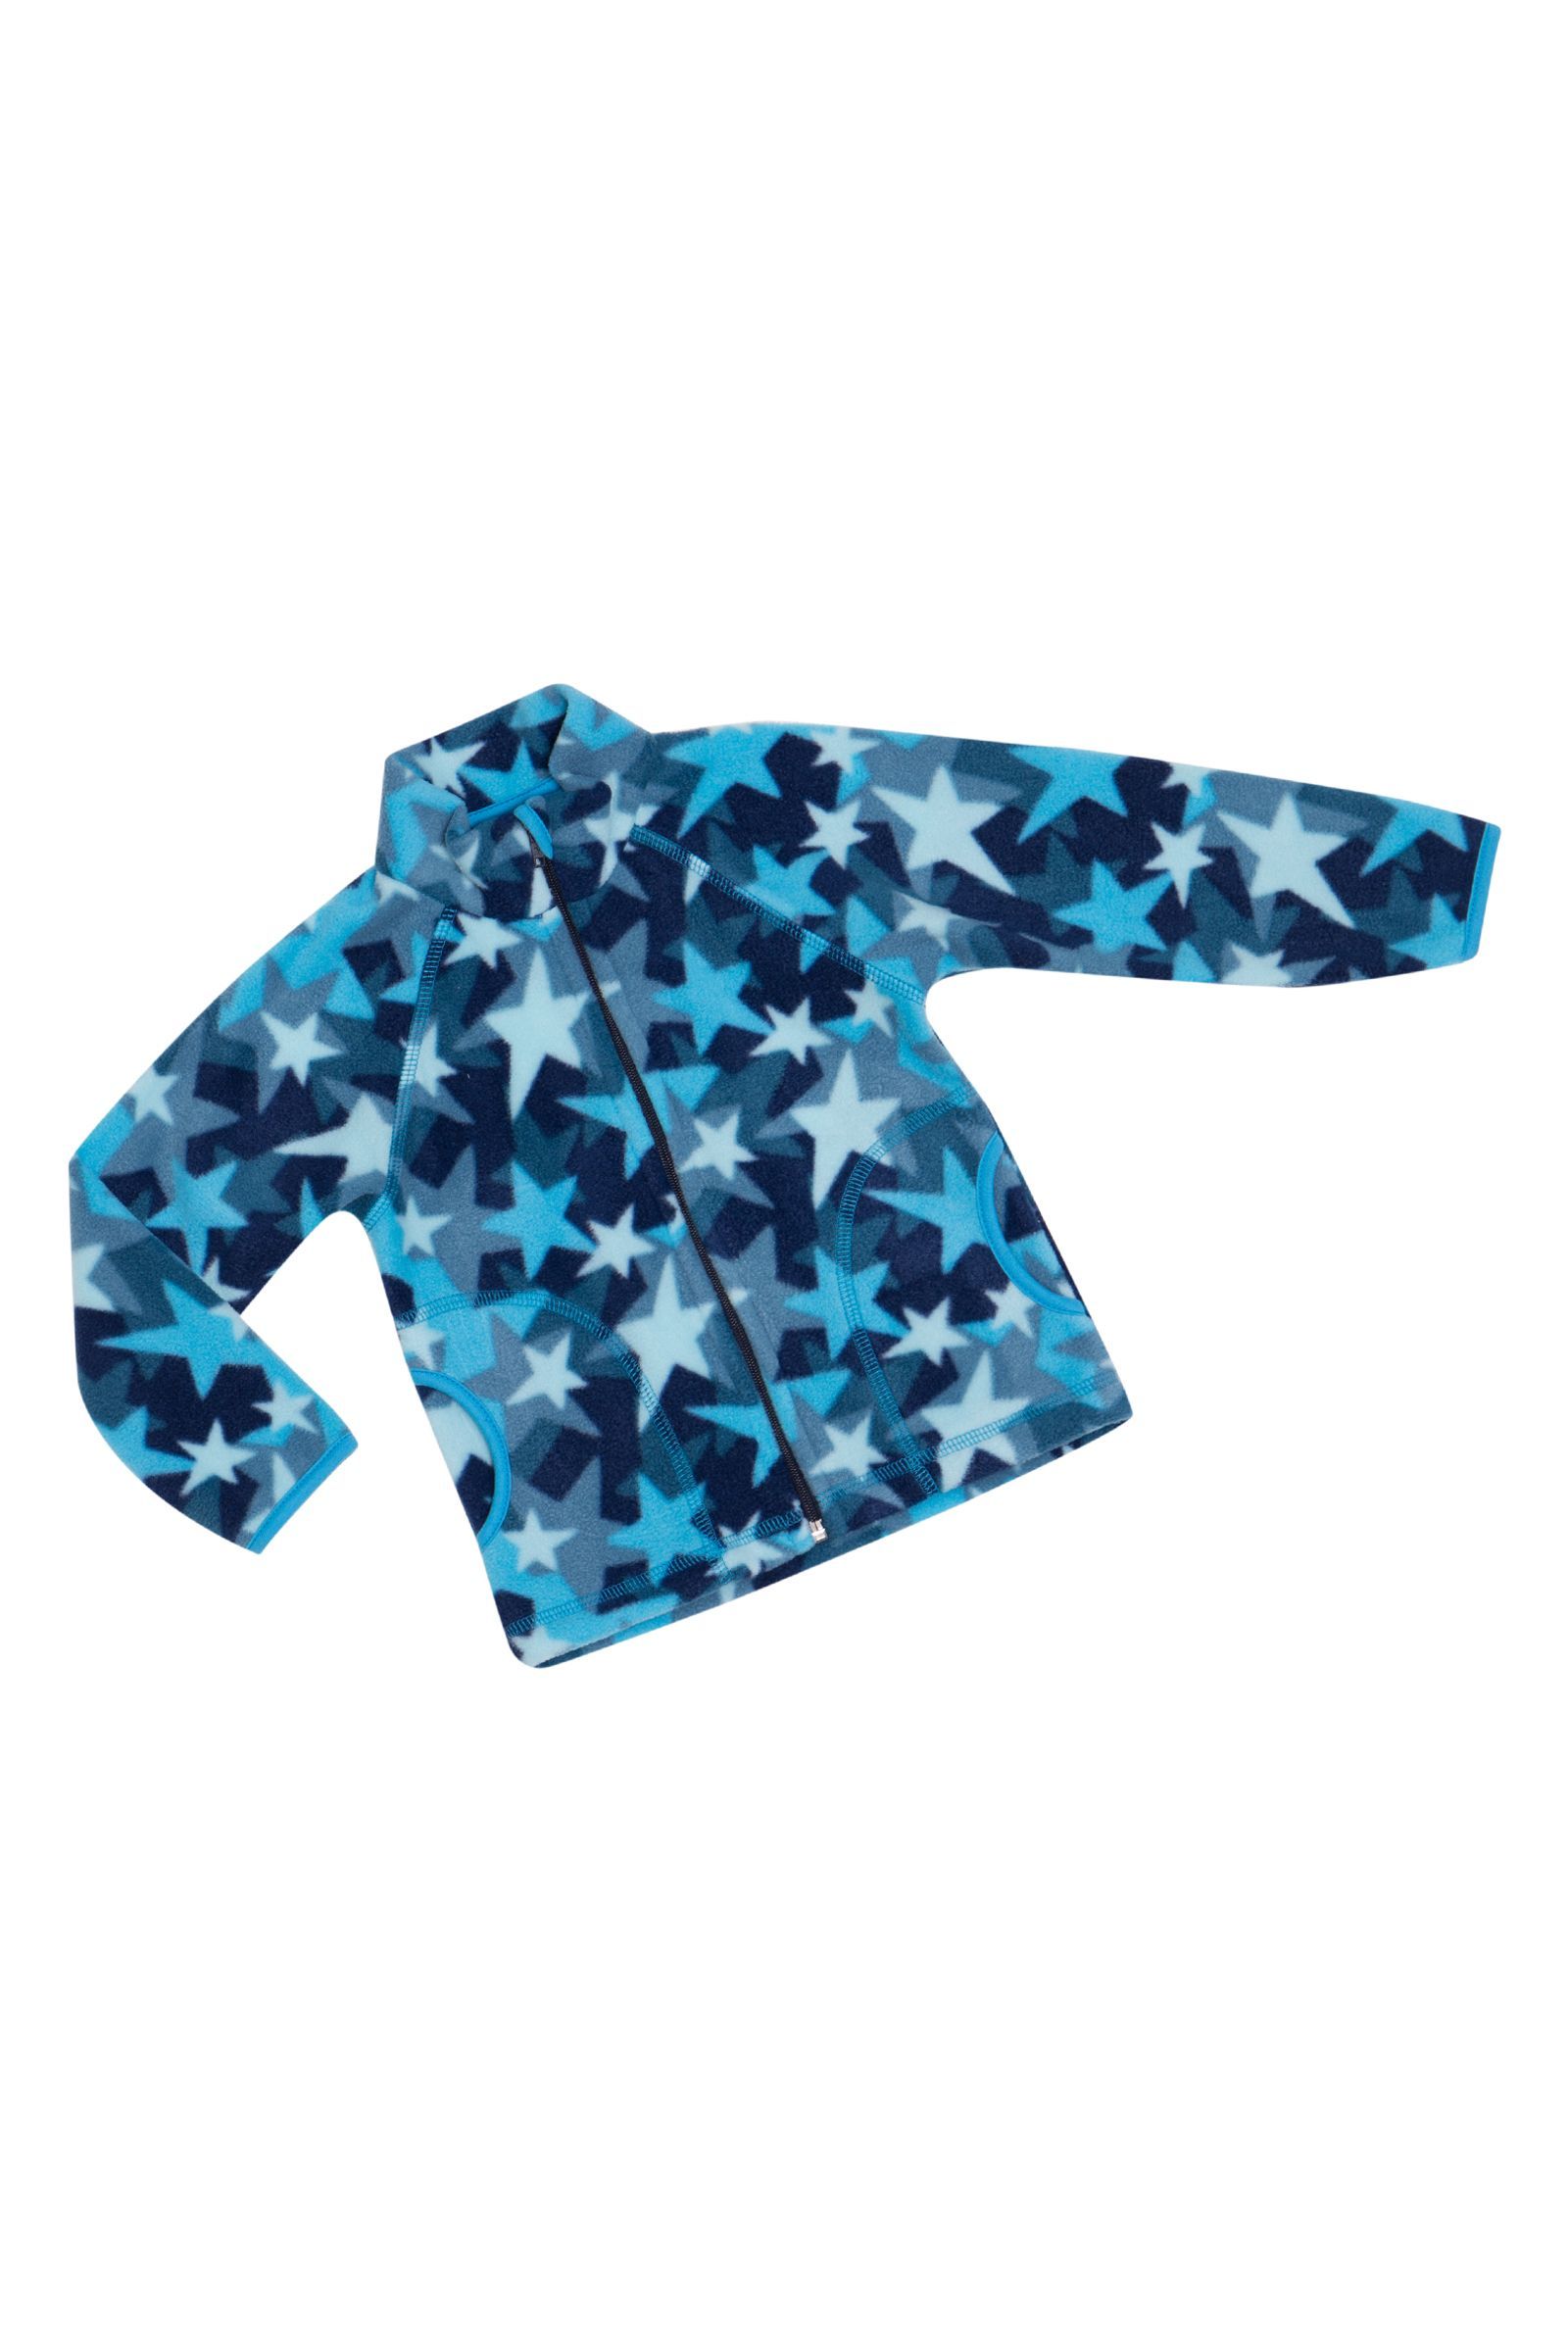 Куртка-КР08-3122 оптом от производителя детской одежды 'Алёна'